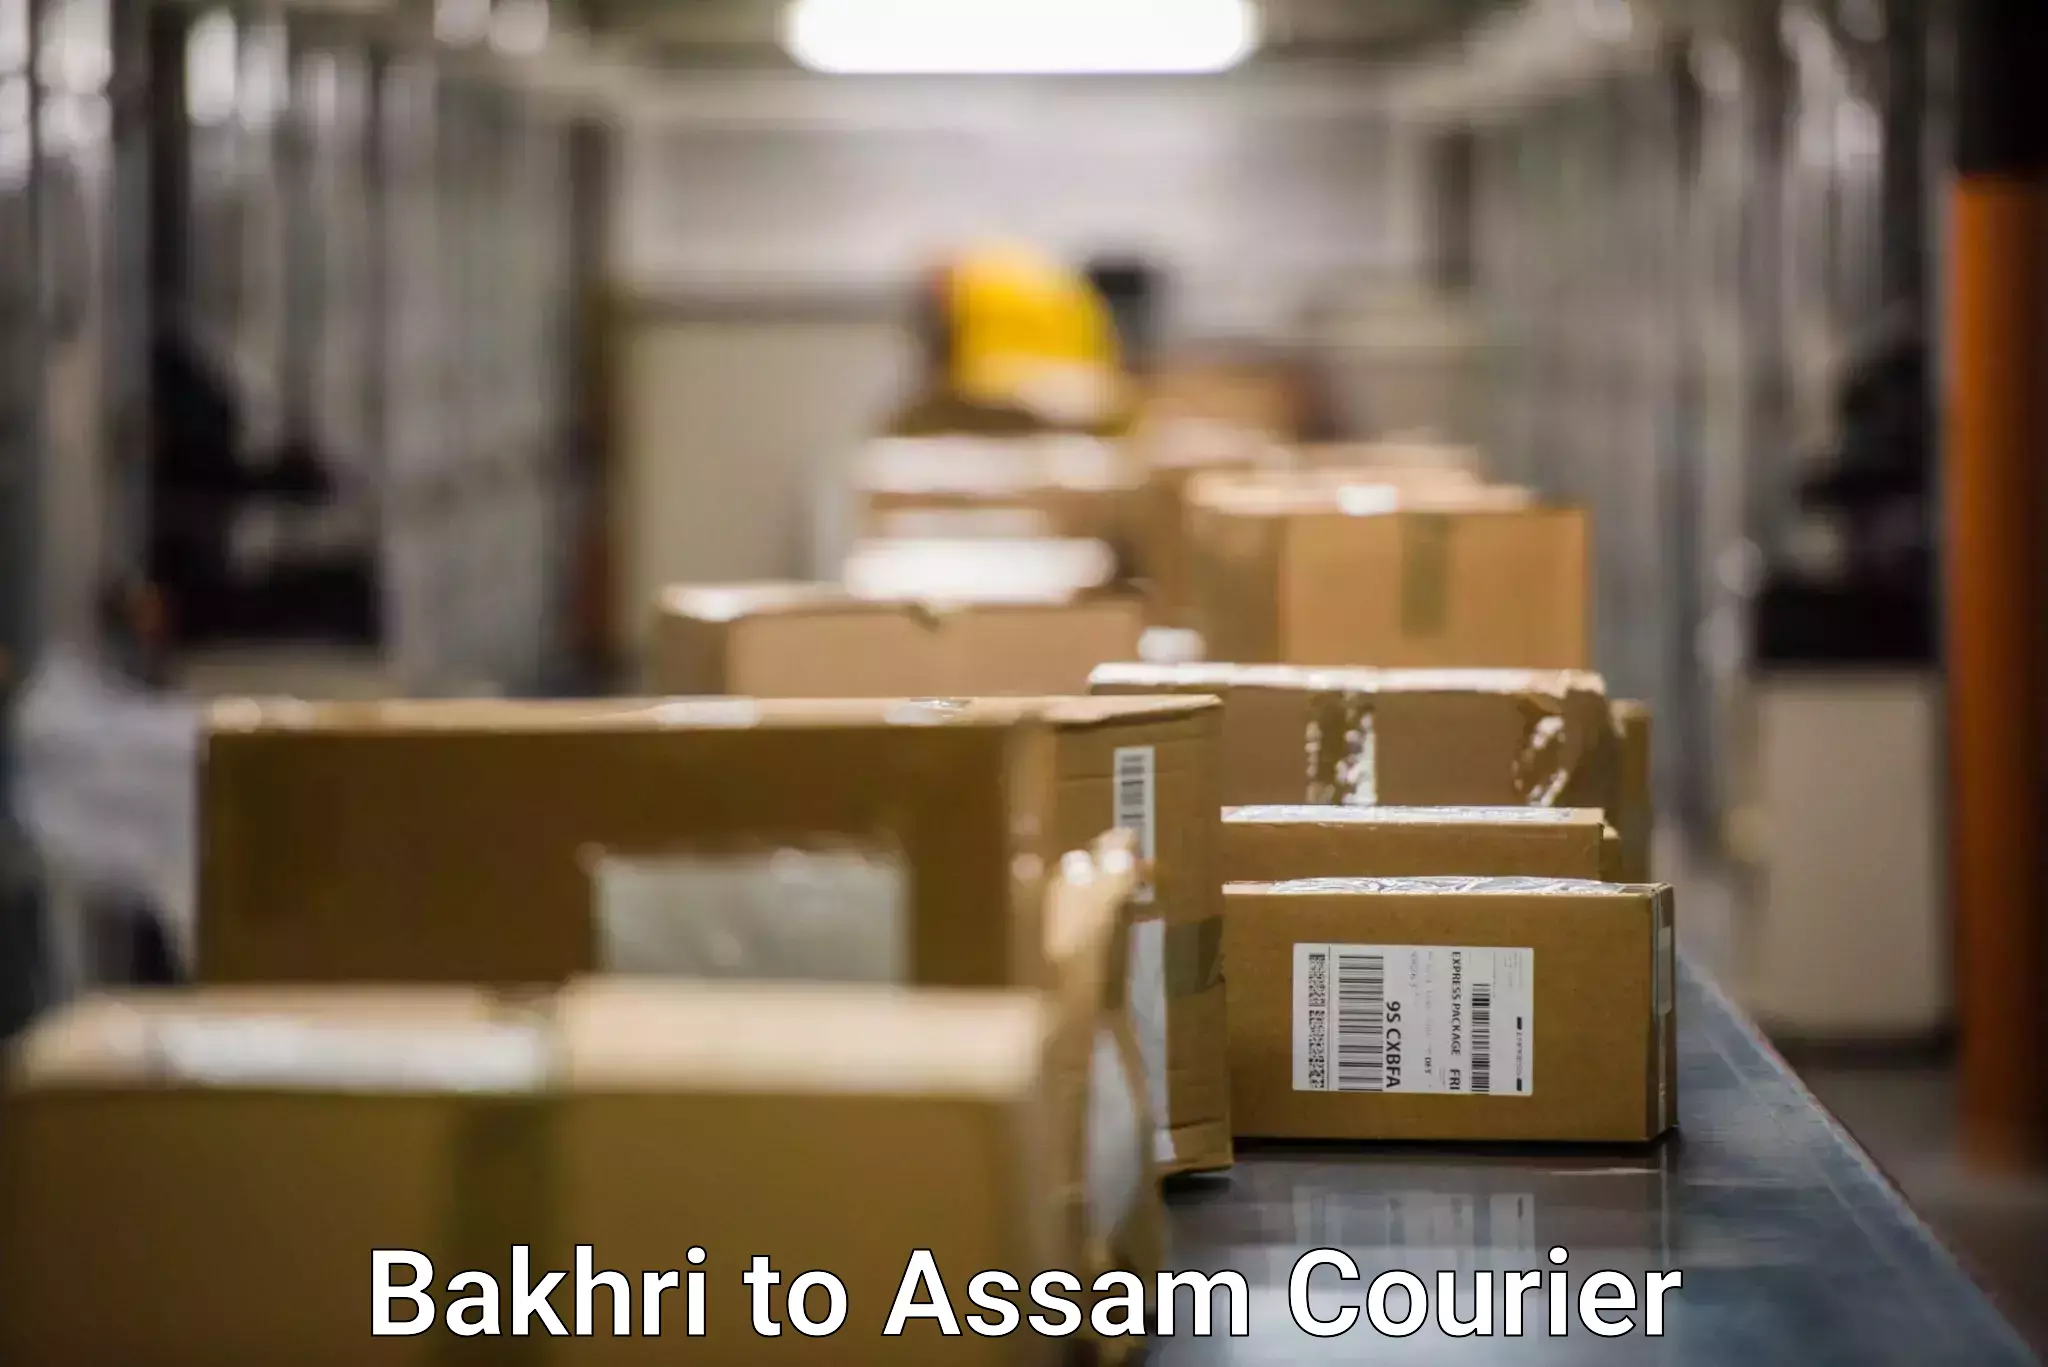 Express courier facilities in Bakhri to Bamunimaidan